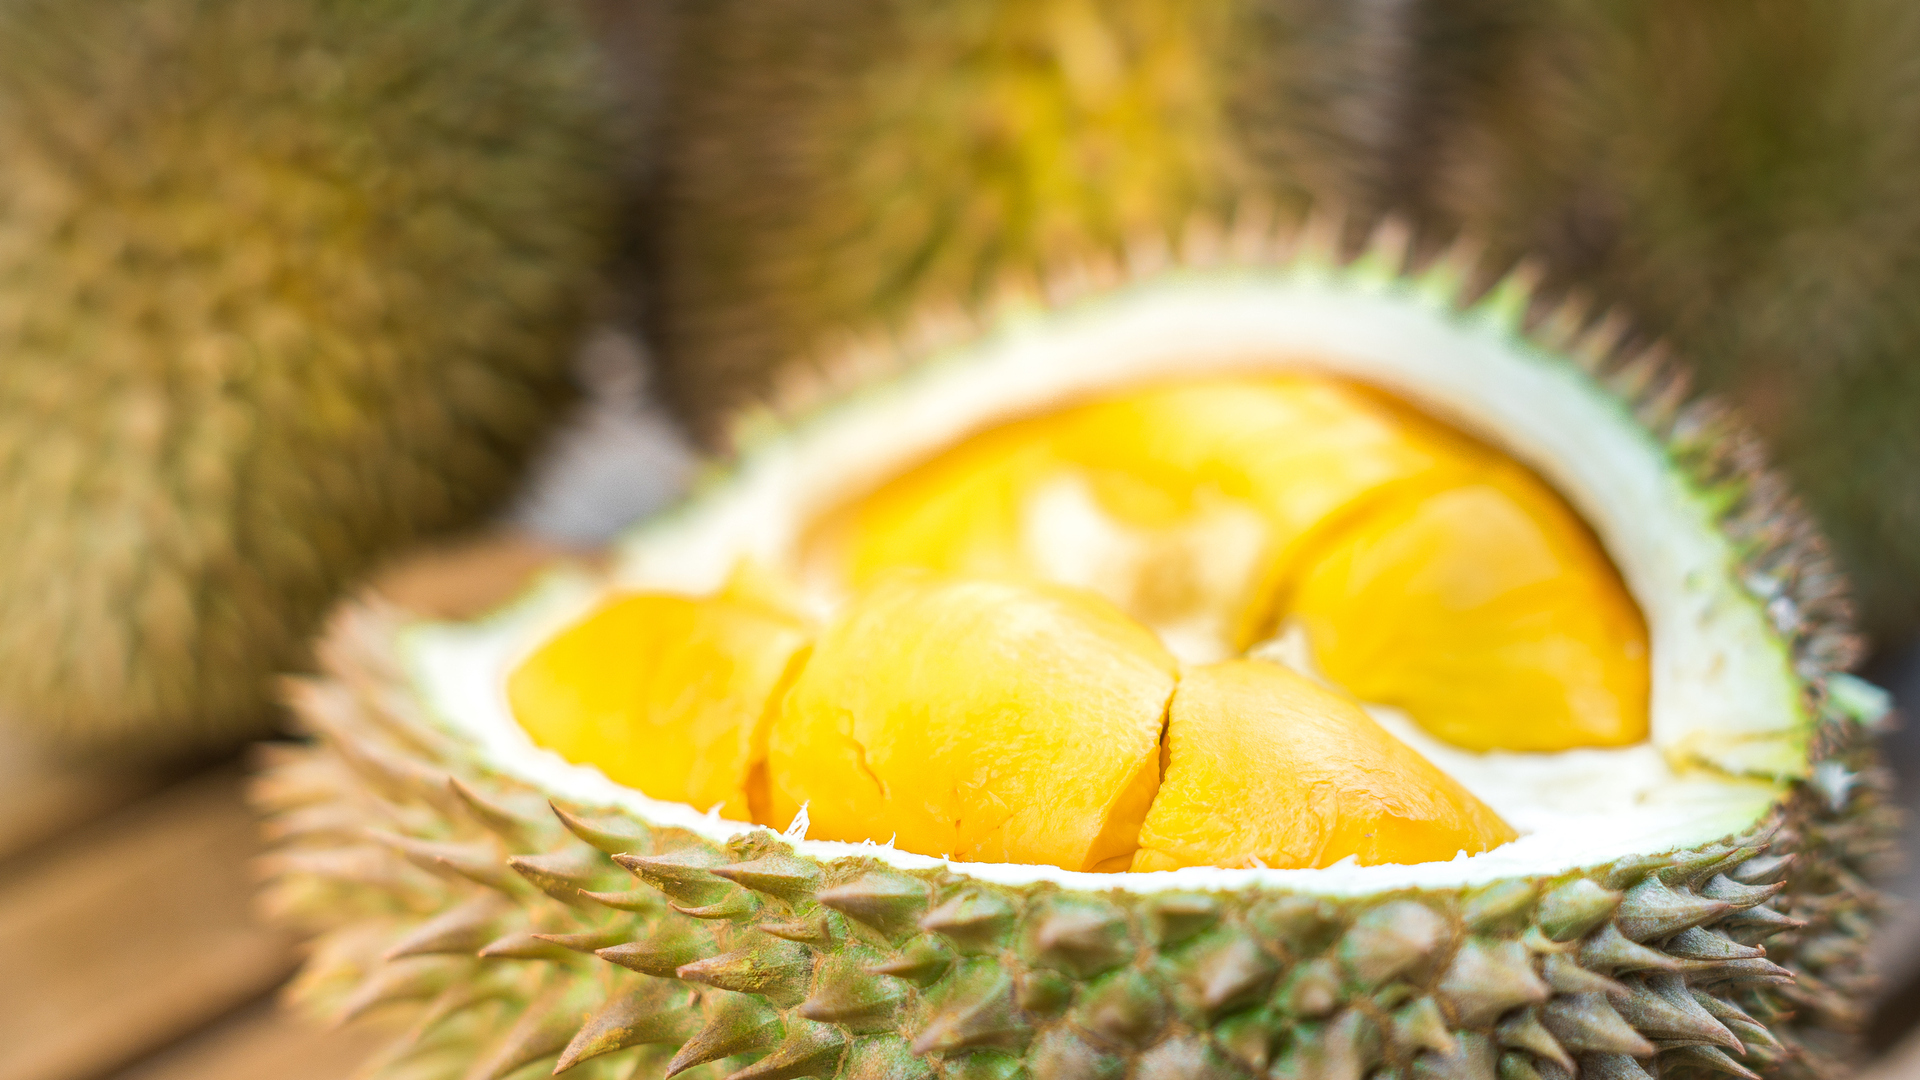 gambar durian siap disantap